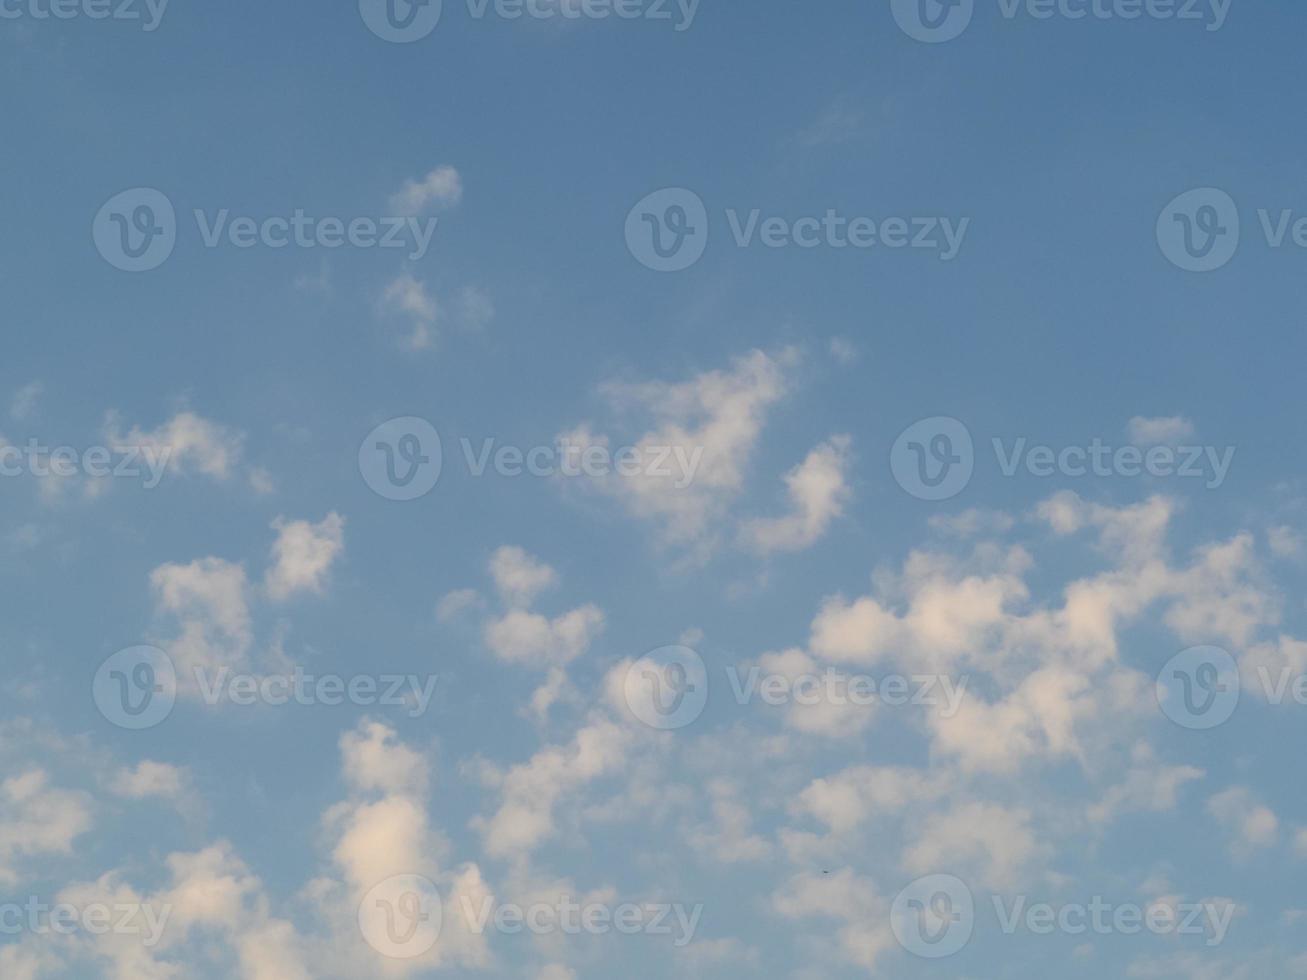 cielo azul con fondo de nubes foto